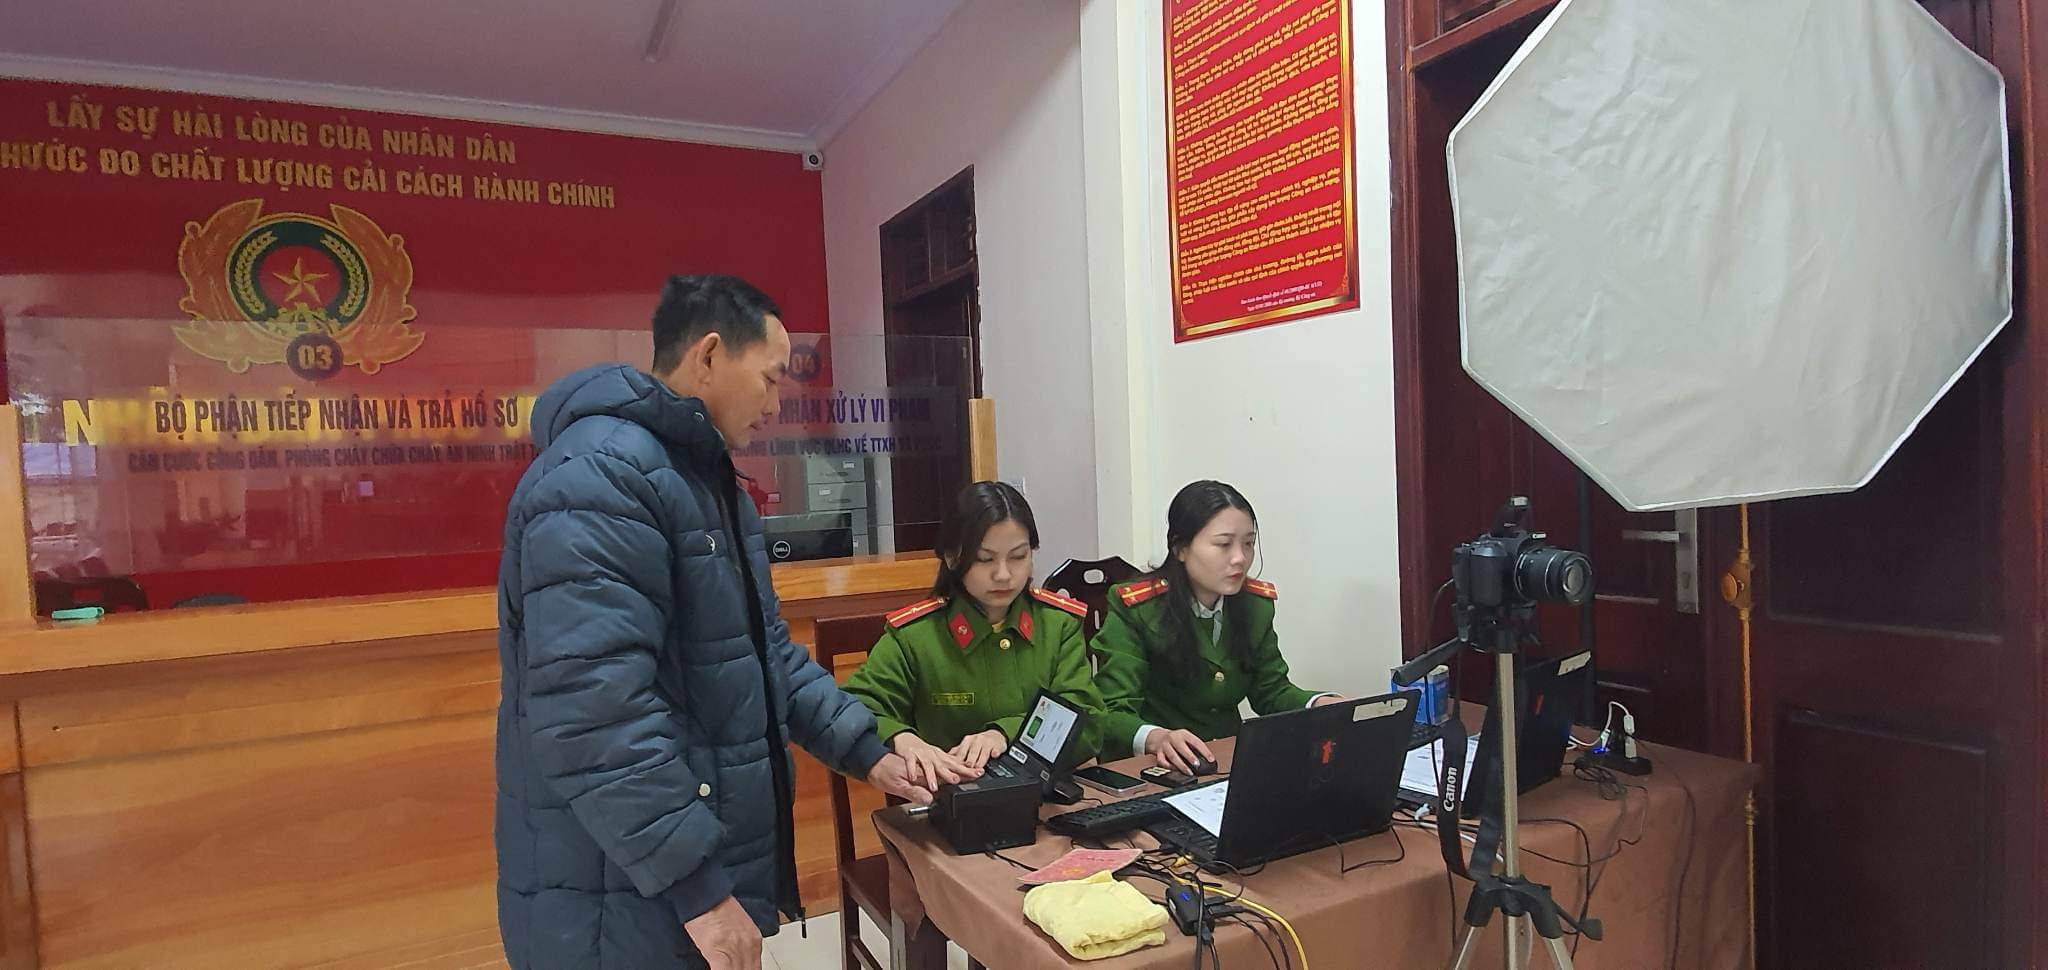 Tổ công tác Công an huyện Con Cuông làm thủ tục cấp thẻ CCCD tại Bộ phận một cửa